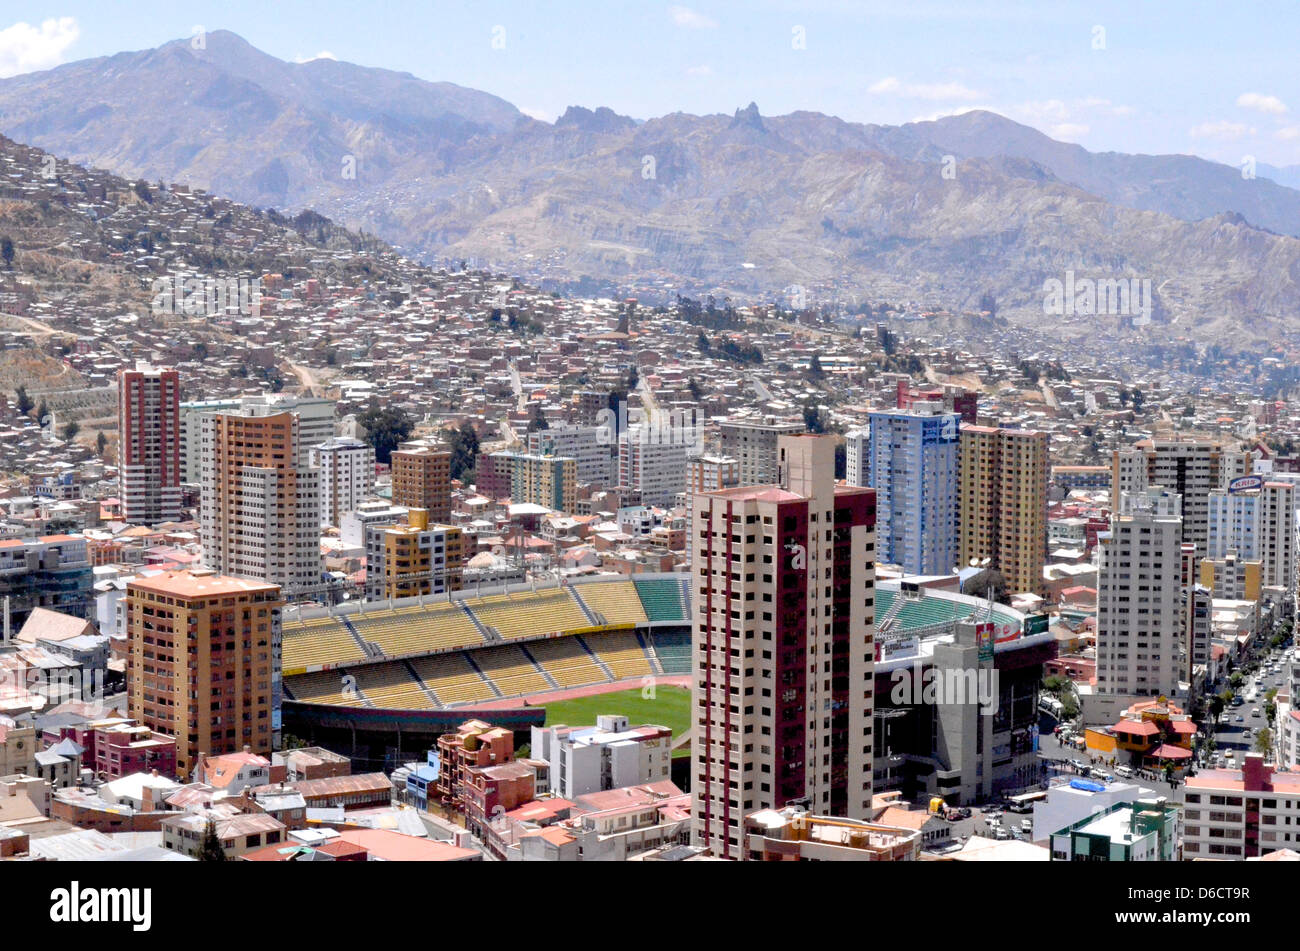 La città di La Paz in Bolivia con lo stadio nazionale in vista Foto Stock